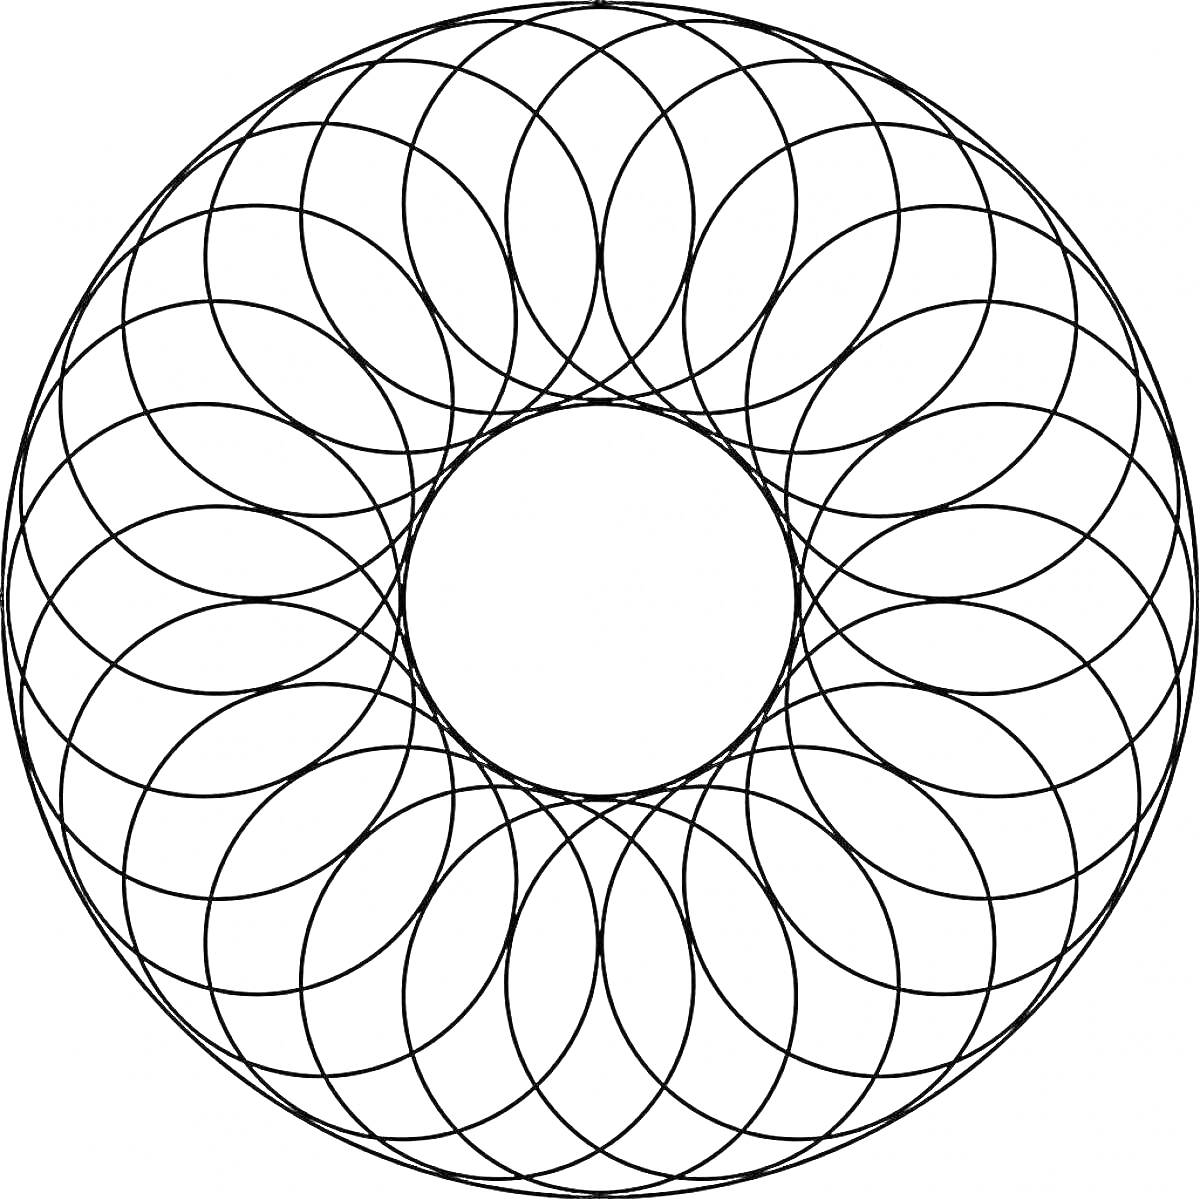 Раскраска круговая раскраска со множеством пересекающихся лепестков, образующих узор в виде кольца